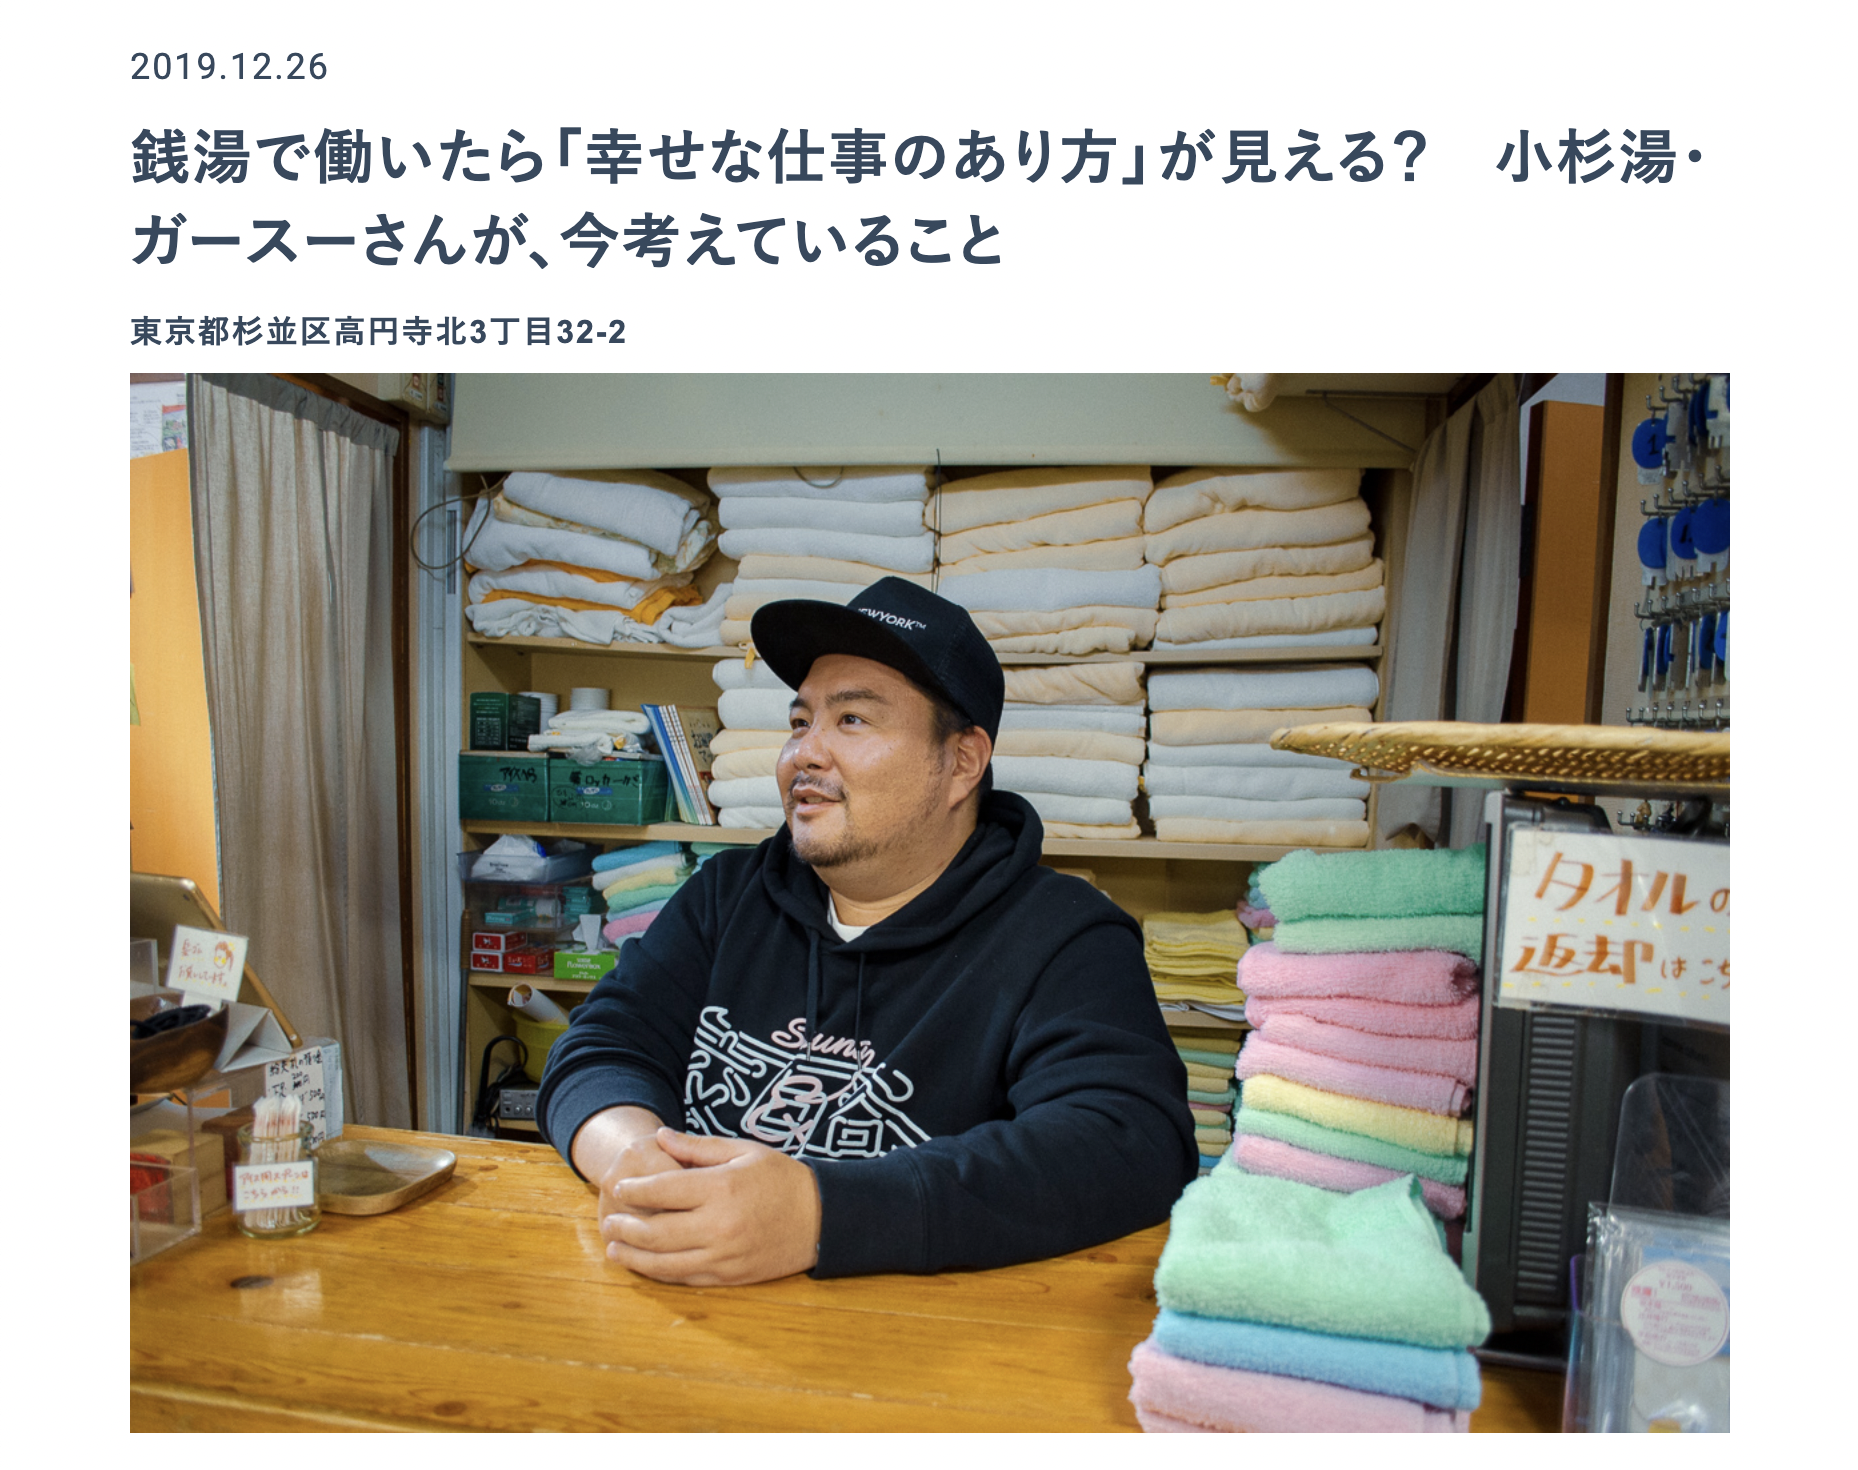 弊社菅原がウェブメディア「東京銭湯 – TOKYO SENTO – 」に取材いただきました